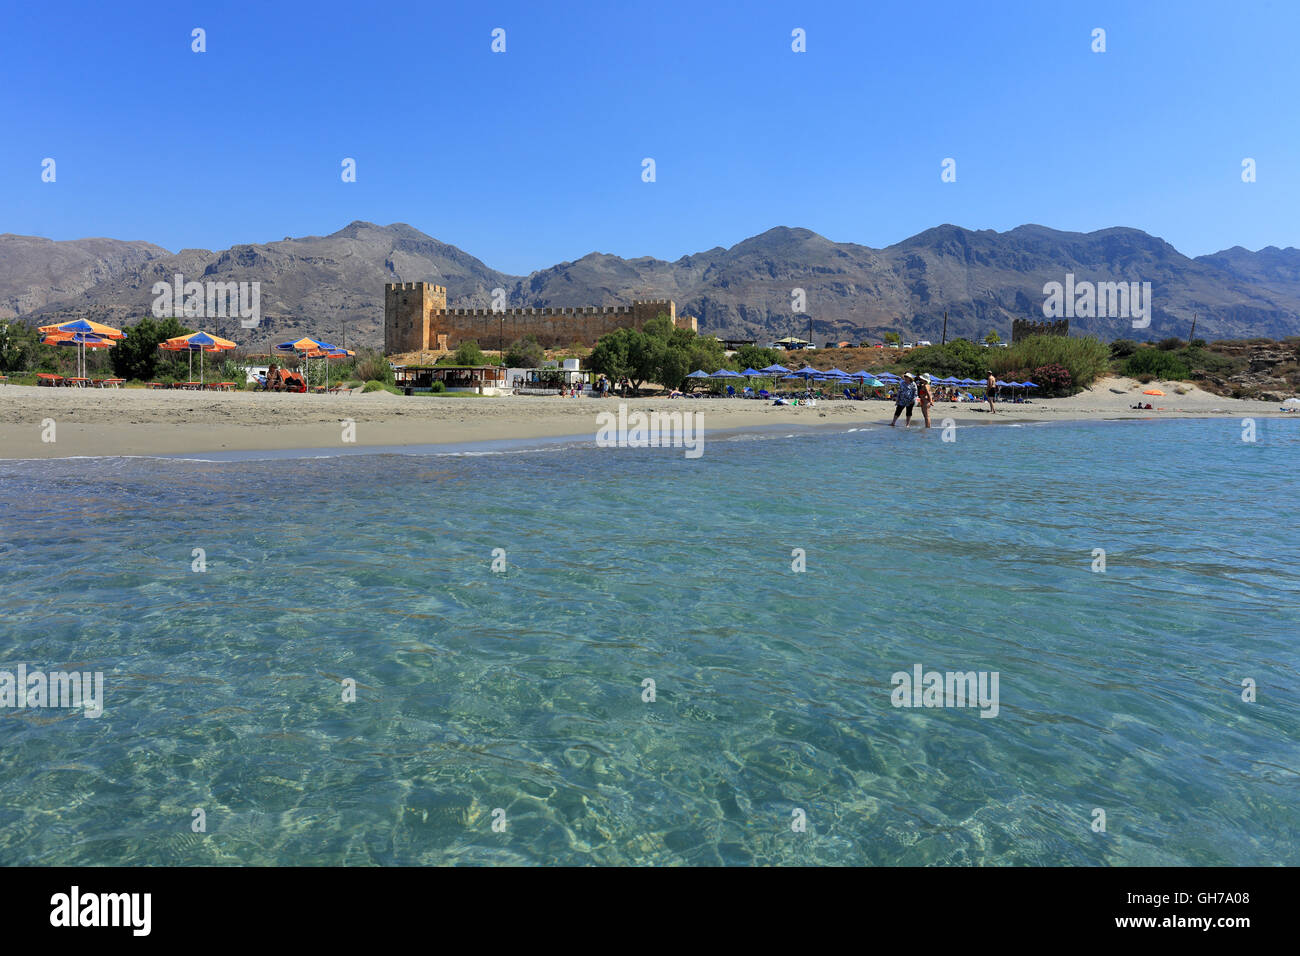 FRANGOKASTELLO, CRETA - luglio 3, 2016: turisti relax vicino al mare limpido accanto al castello di Frangokastello, a sud di Creta. V Foto Stock